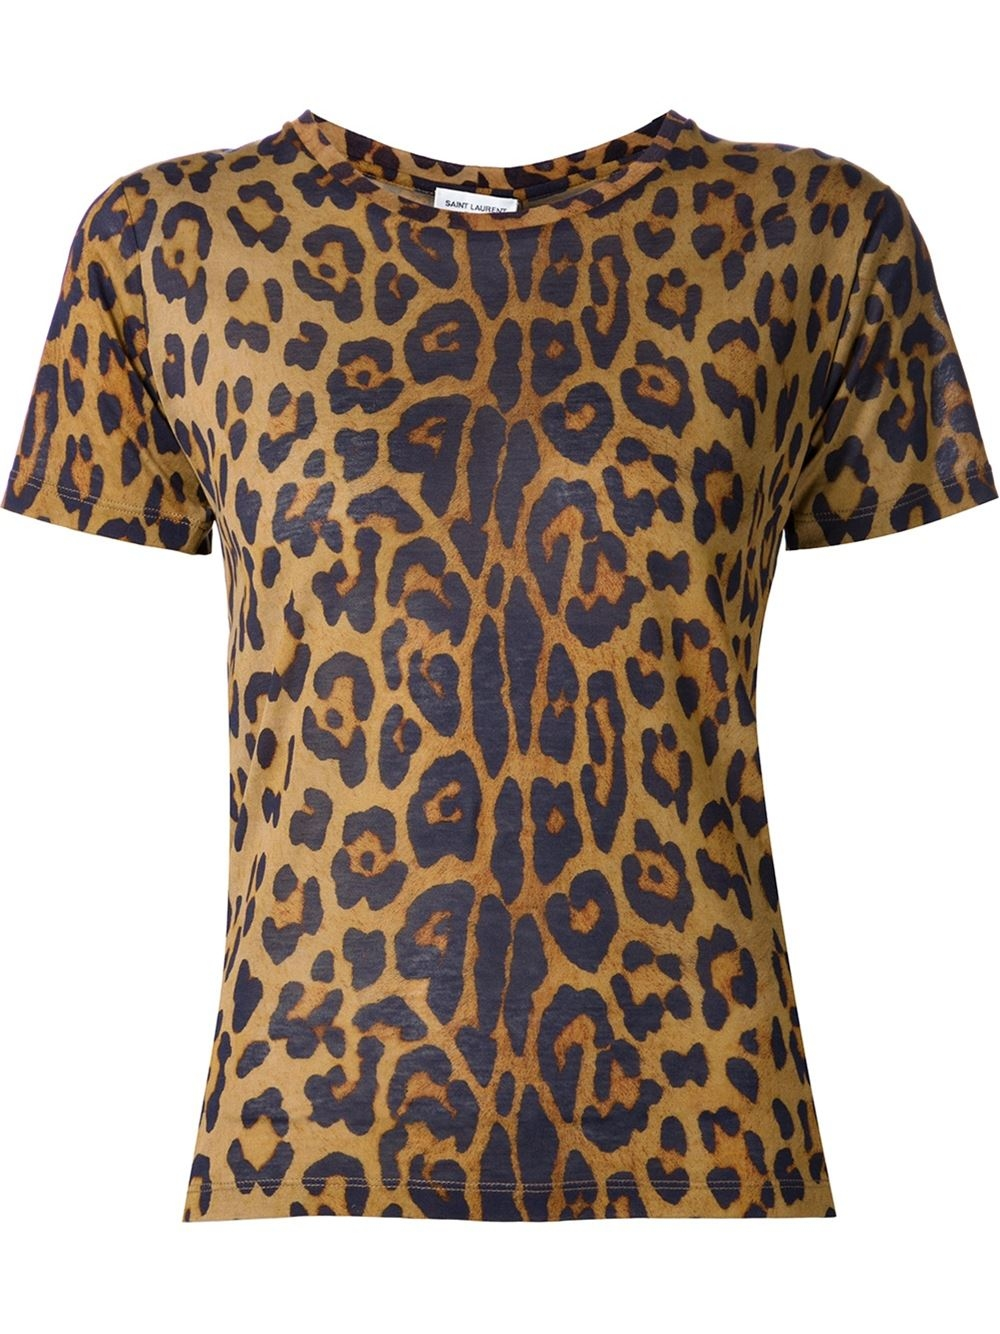 Lyst - Saint laurent Leopard Print T-shirt in Brown